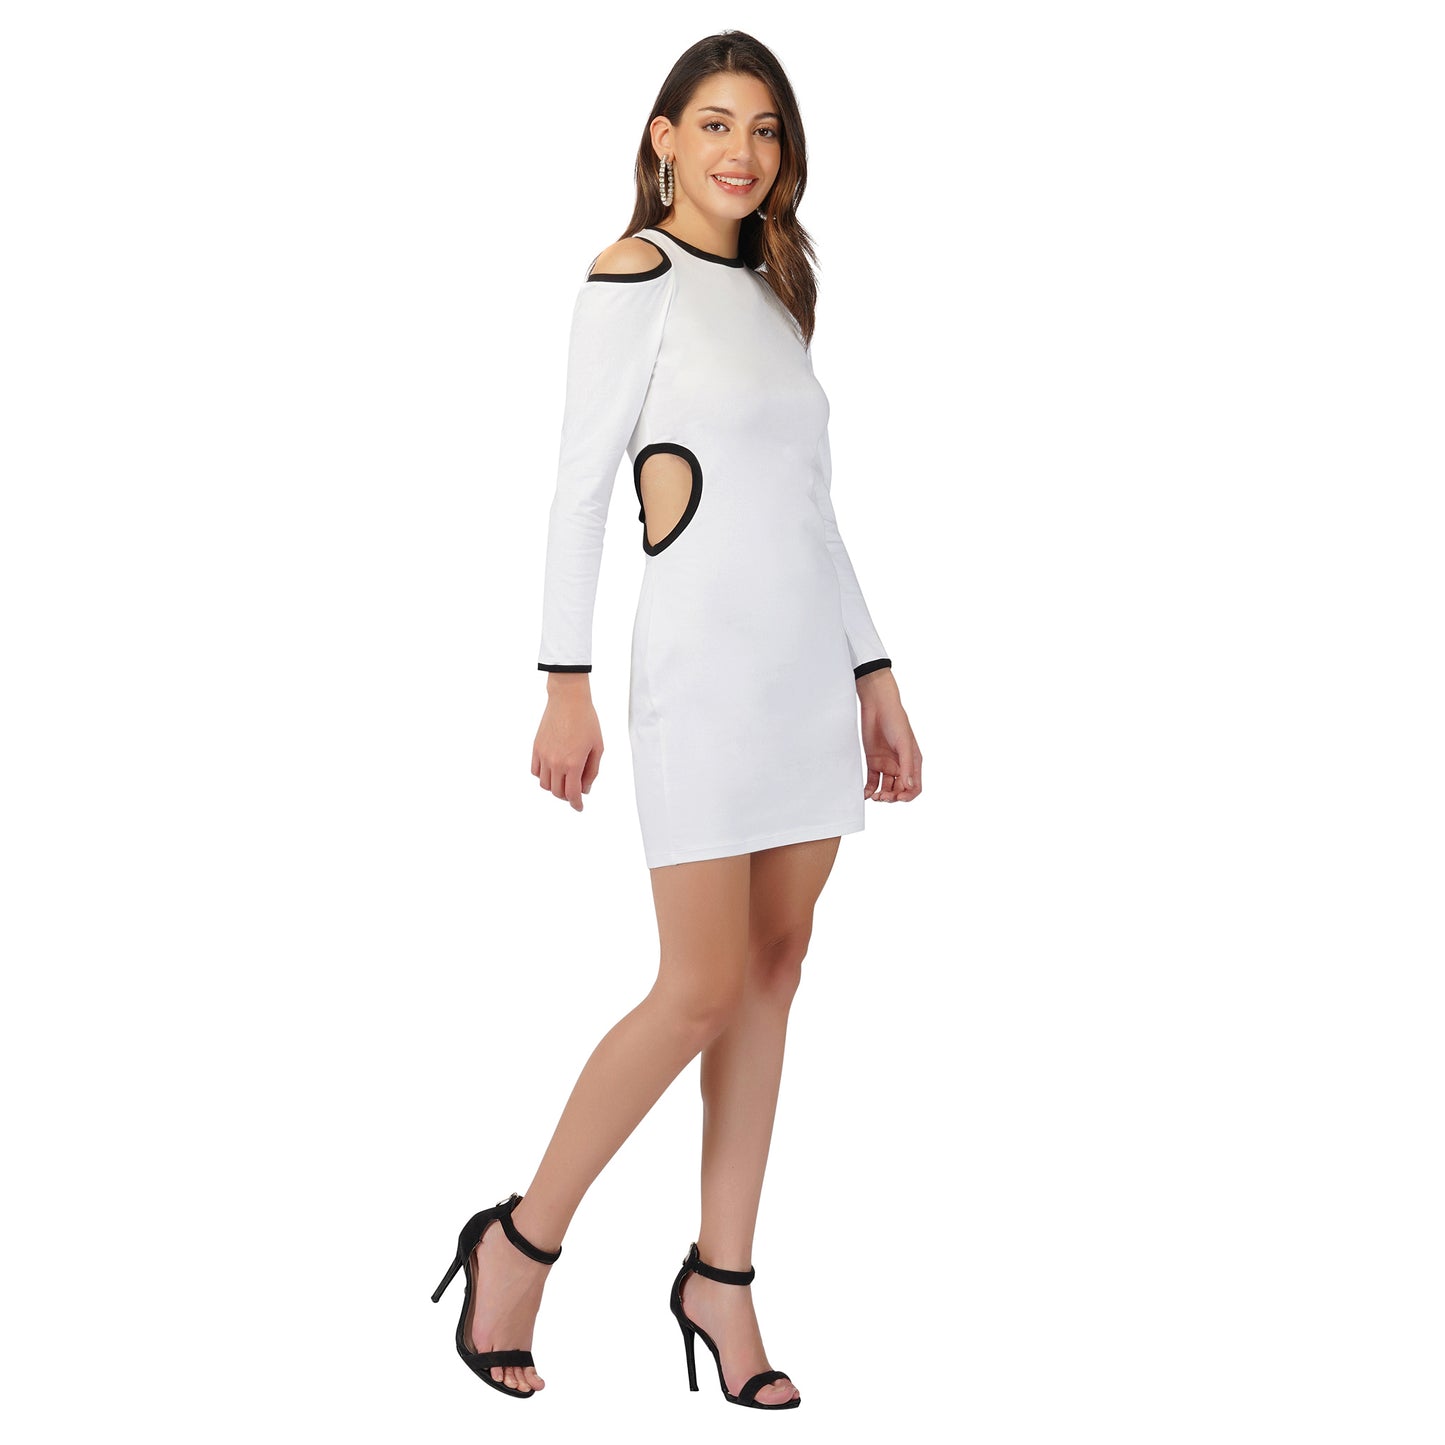 SLAY. Women's White Cold Shoulder Side Cutout Asymmetric Dress